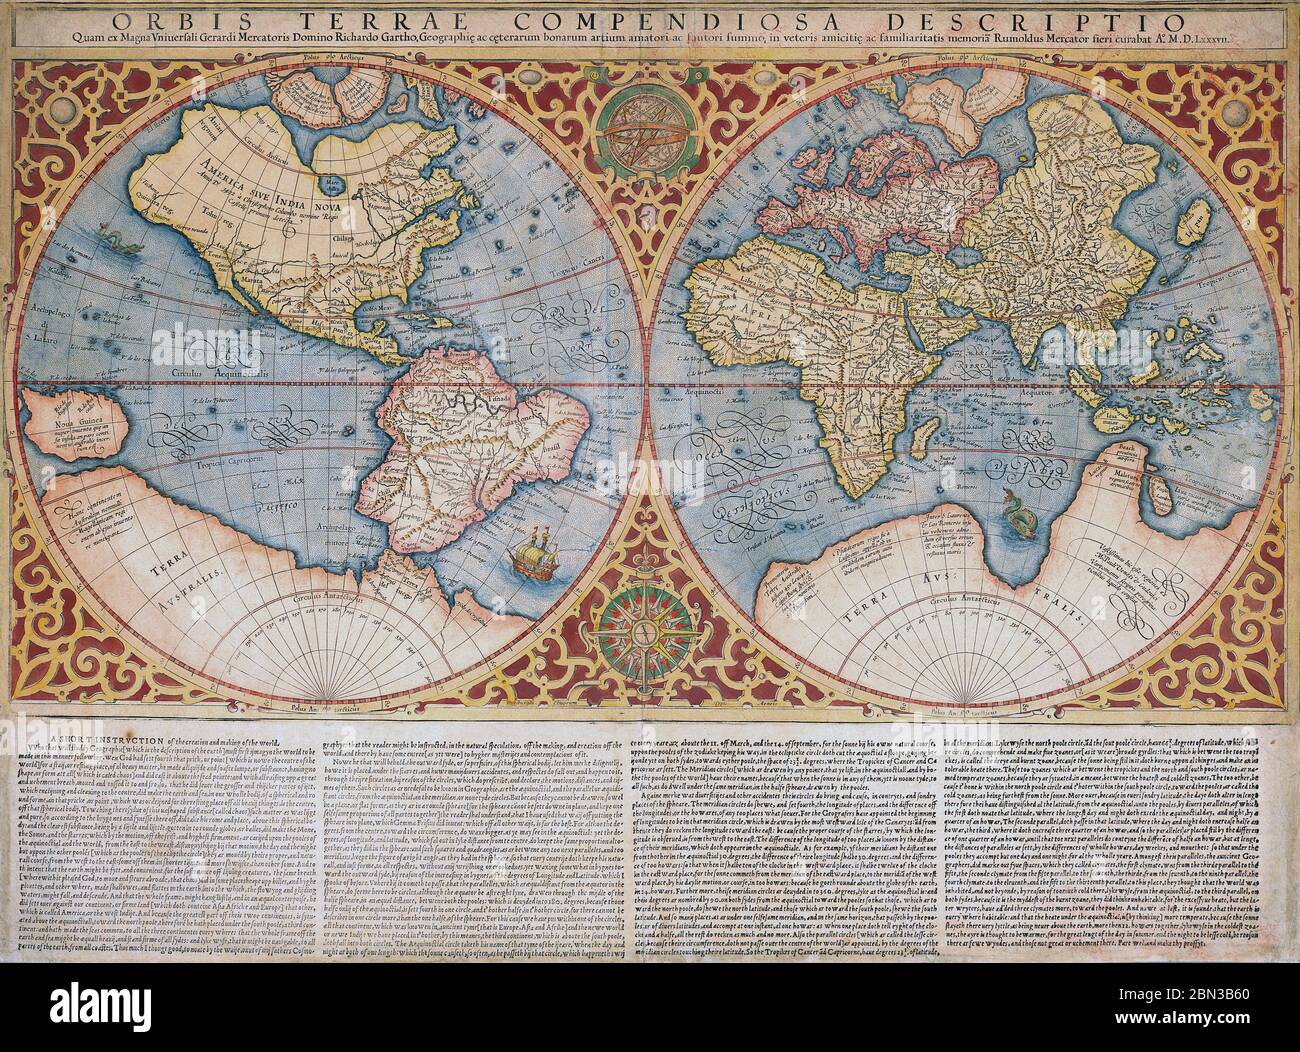 Carte du monde de Gerard Mercator, publiée pour la première fois vers 1595. Orbis terrae compendiosa description. Banque D'Images